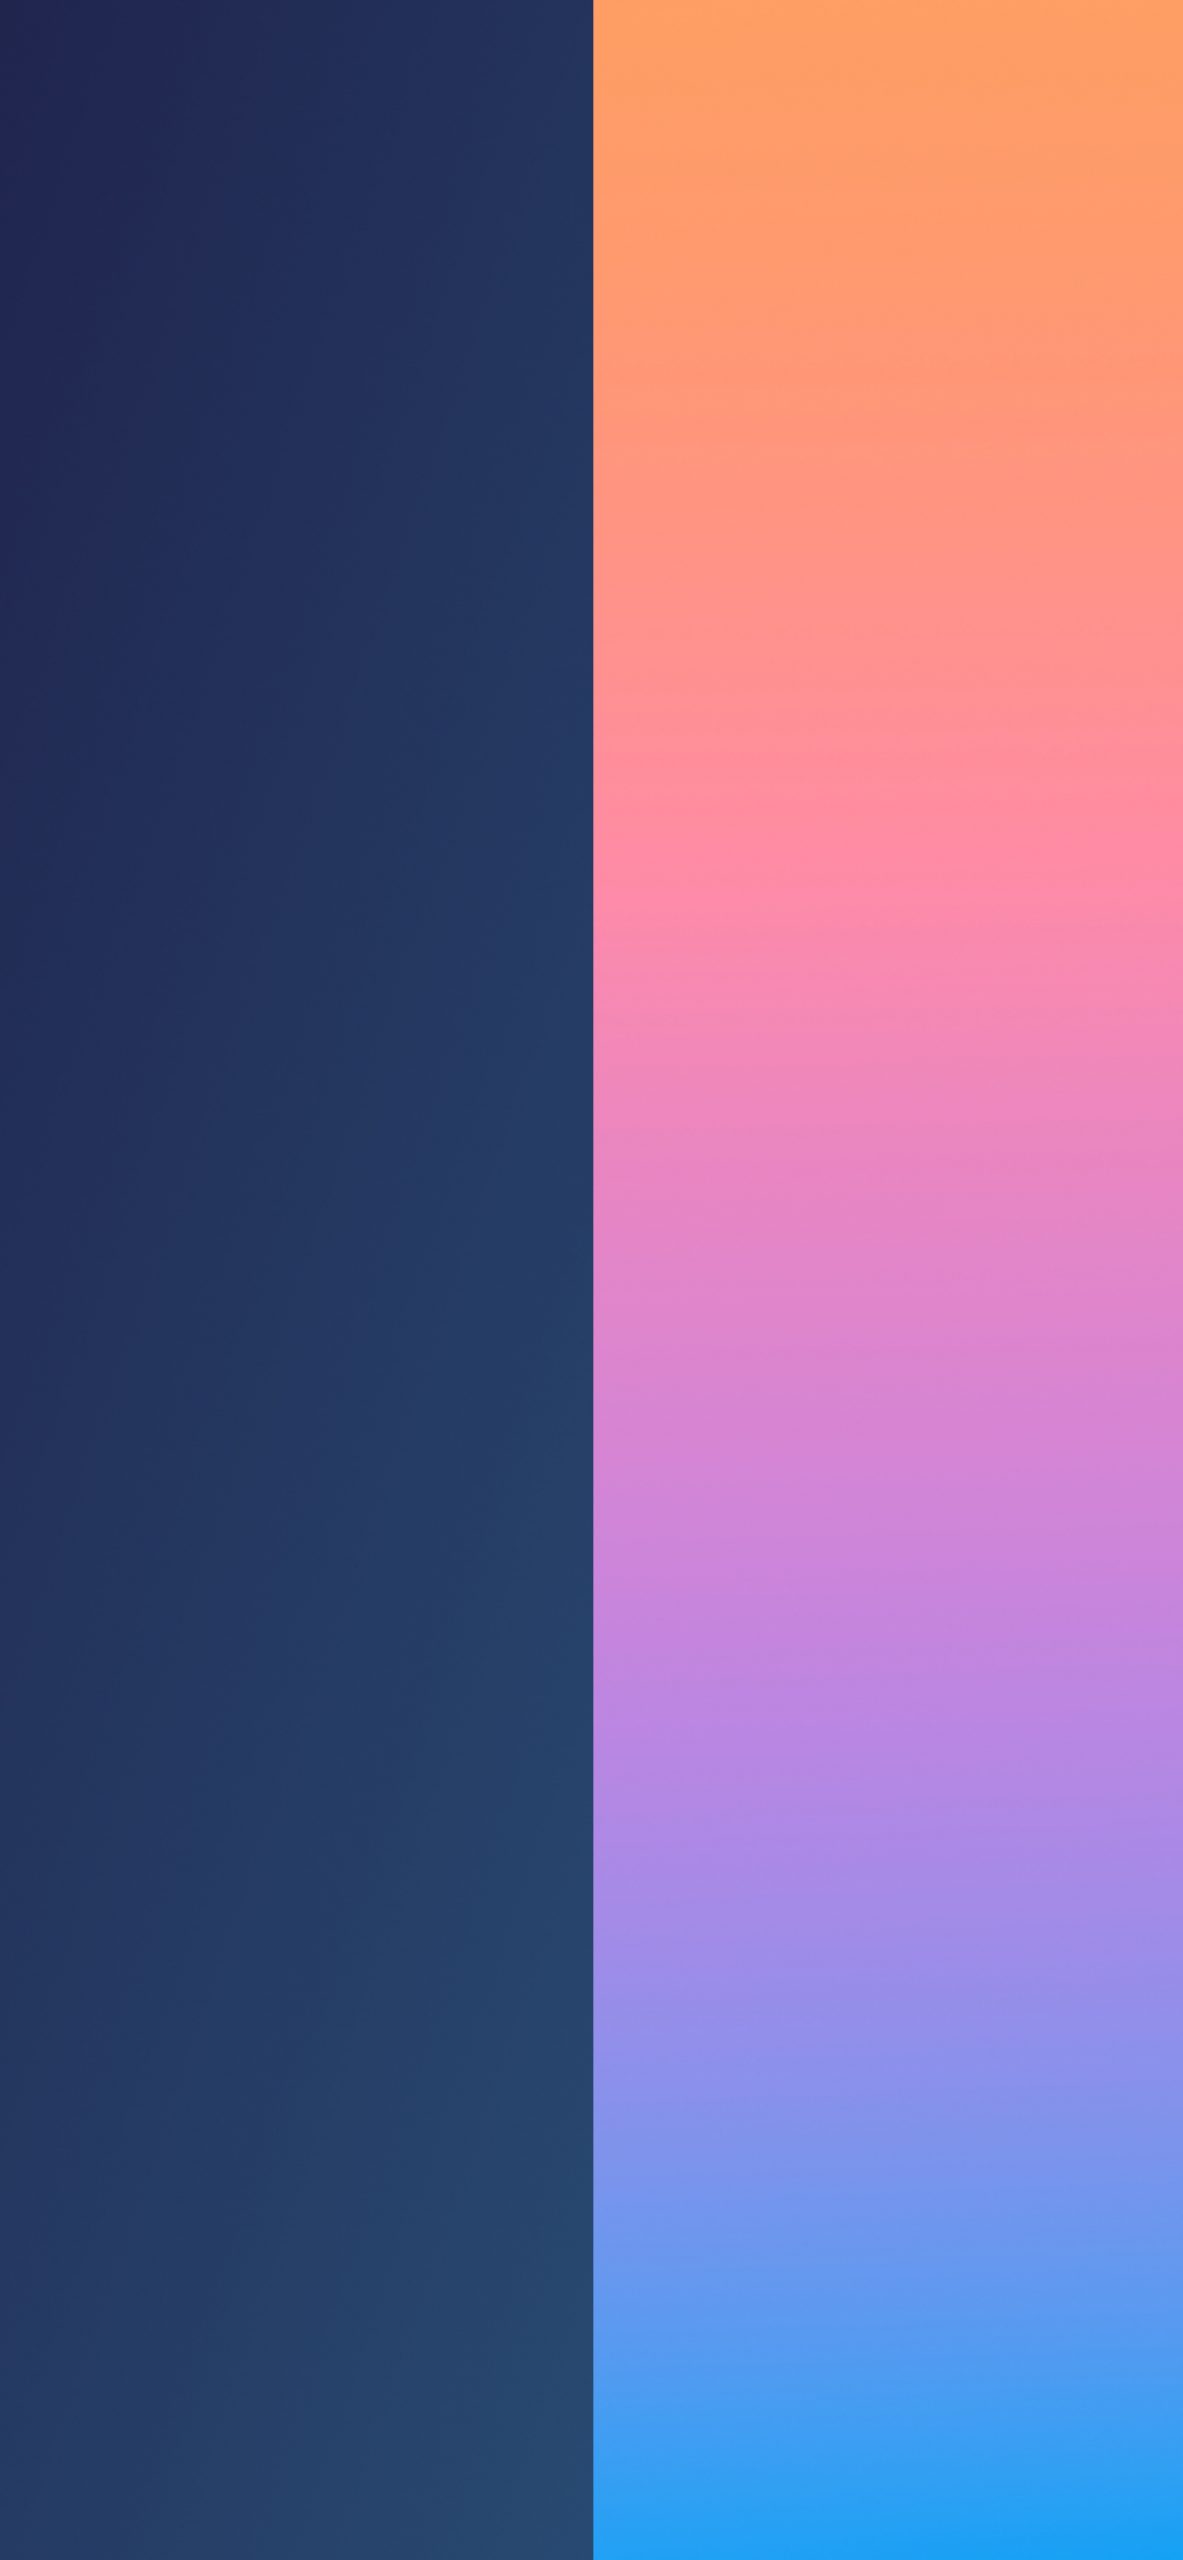 Подборка: двухцветные обои для iPhone - Лайфхакер